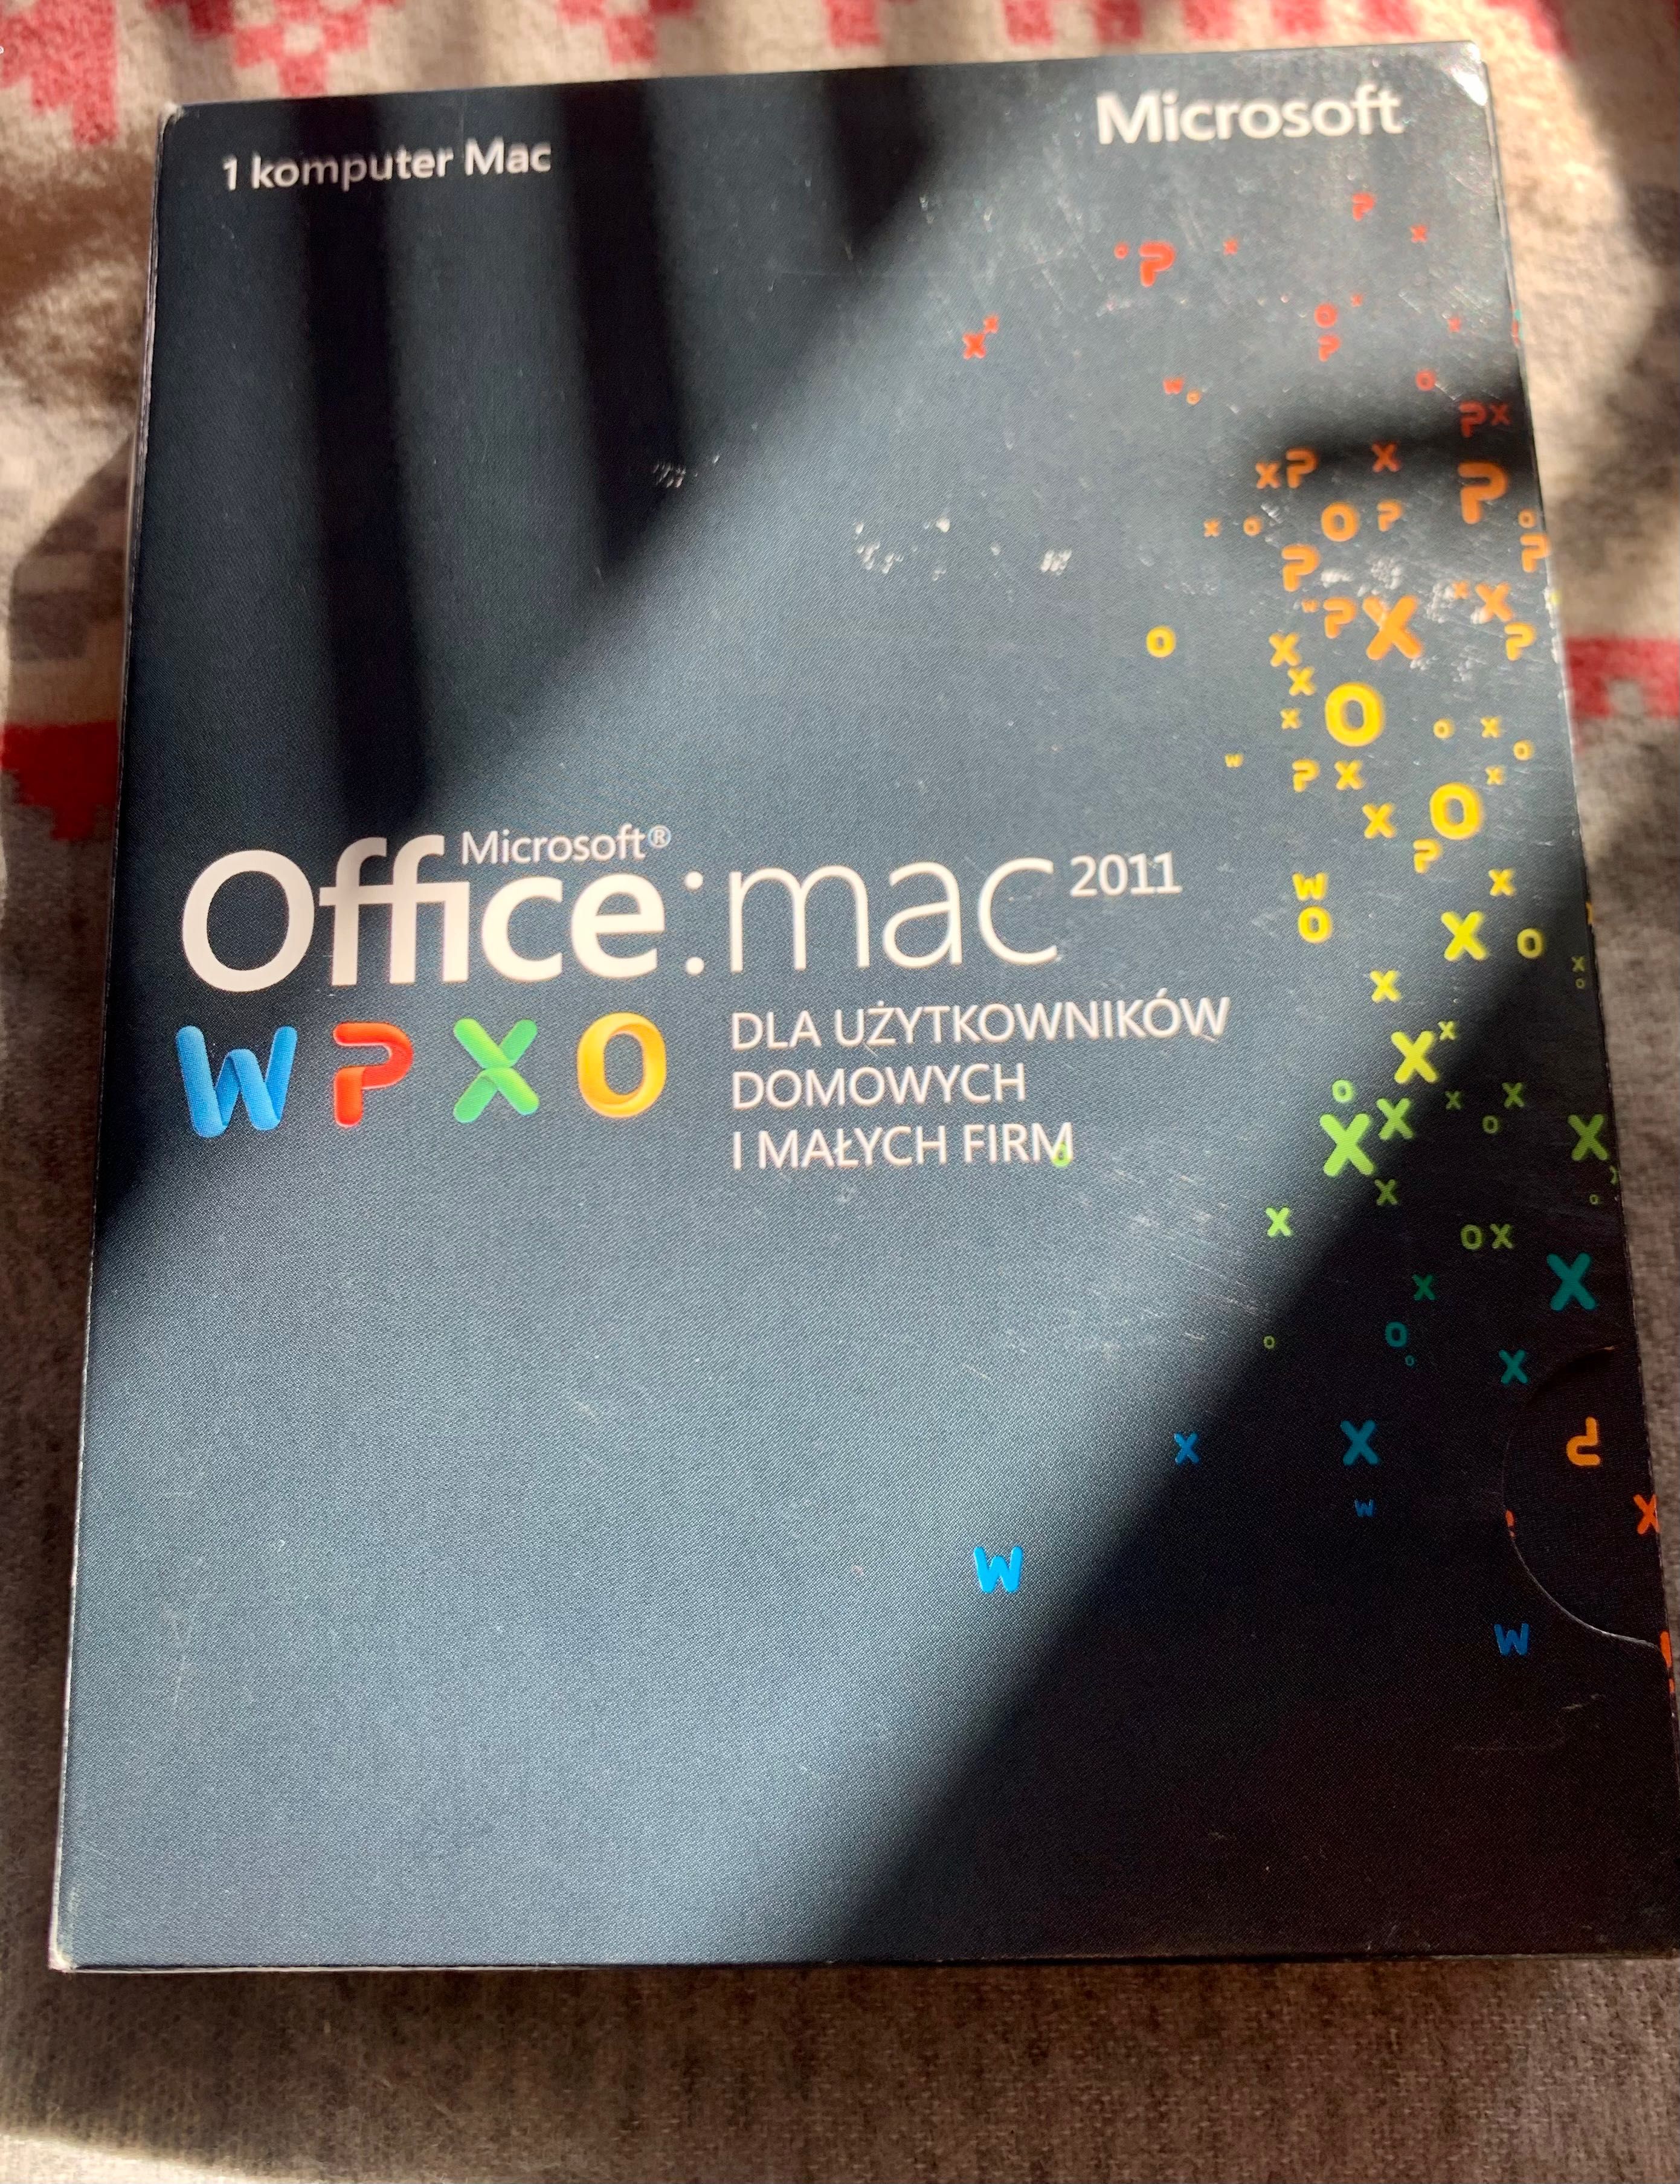 Microsoft Office 2011 dla użytkowników Domowych i Małych Firm